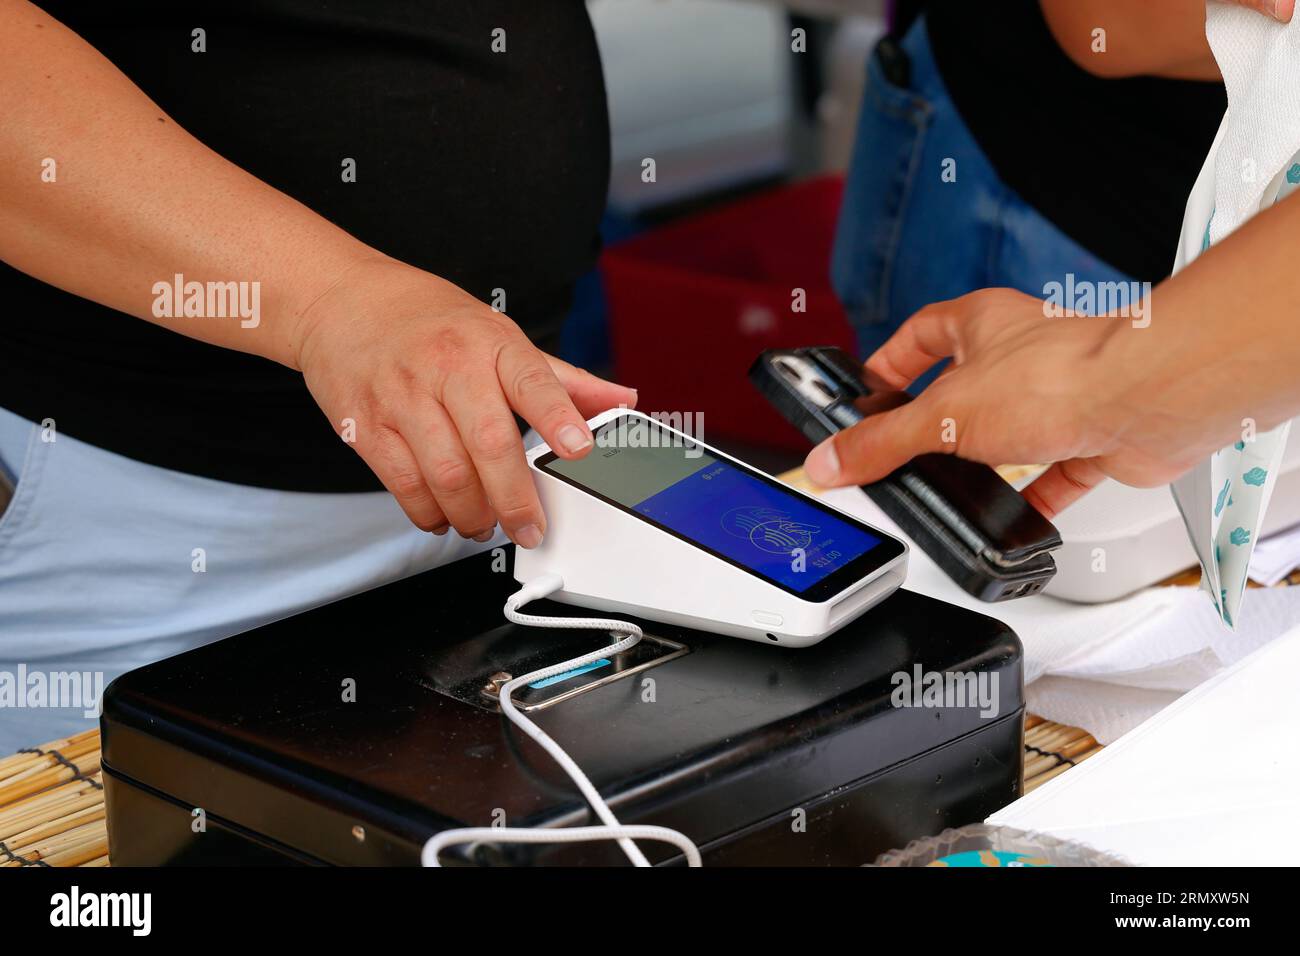 Une personne tient un smartphone sur un terminal de point de vente sans fil Square terminal pour effectuer un paiement mobile NFC, ou un paiement numérique sans contact. Banque D'Images